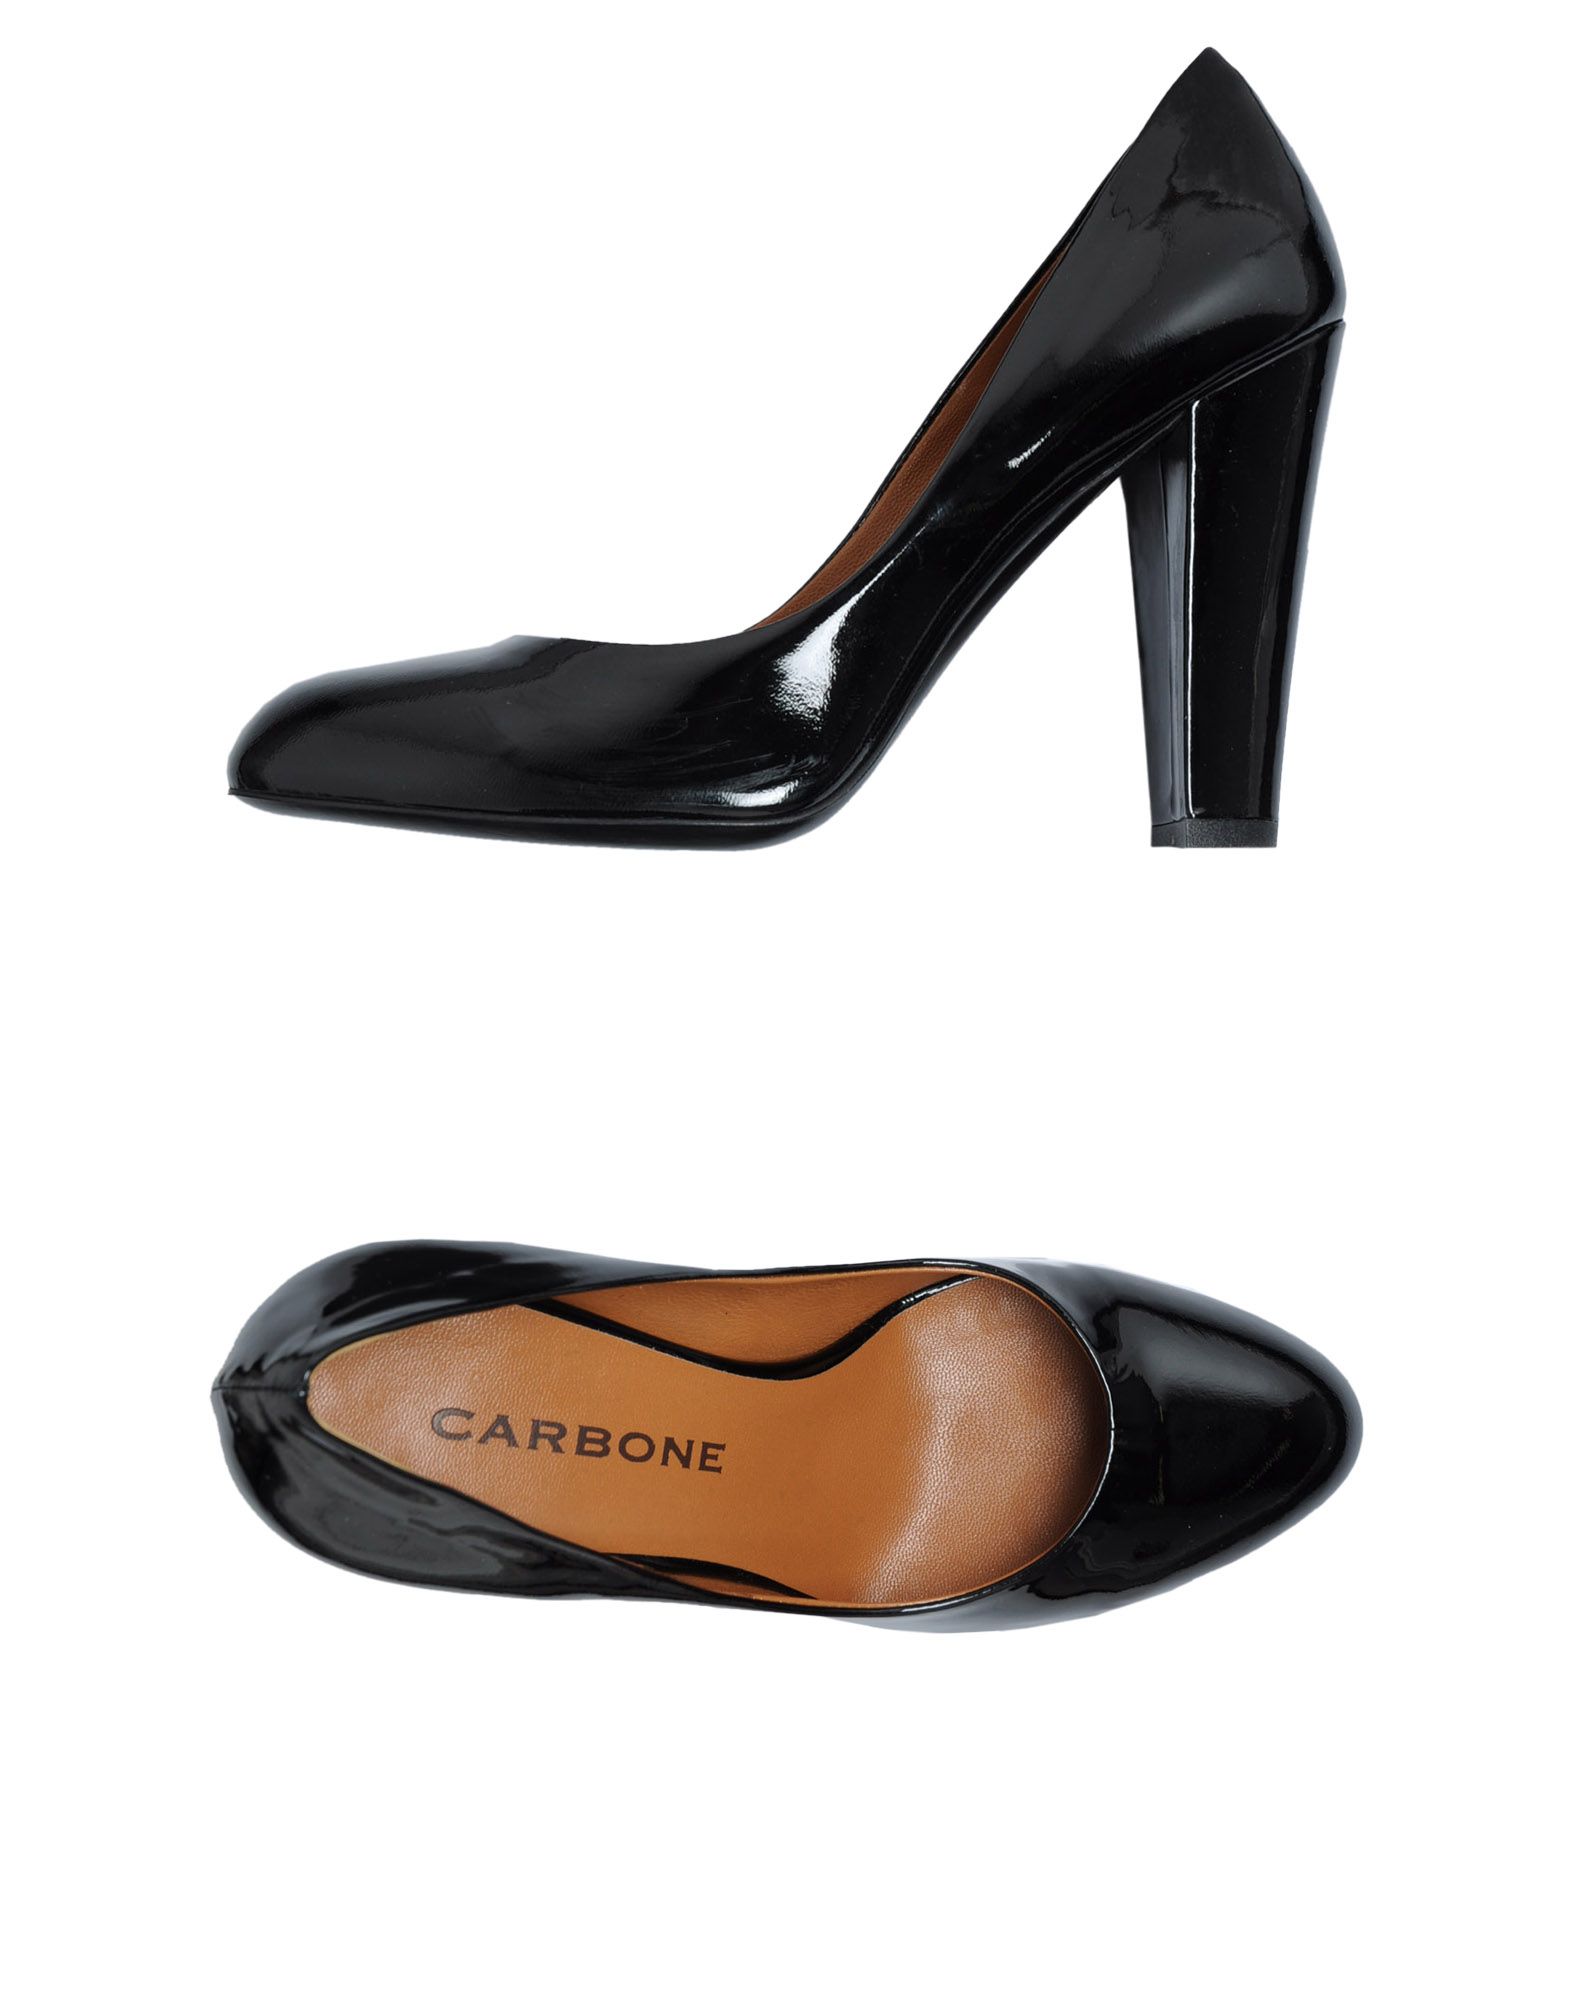 Foto Carbone Zapatos De SalóN Mujer Negro